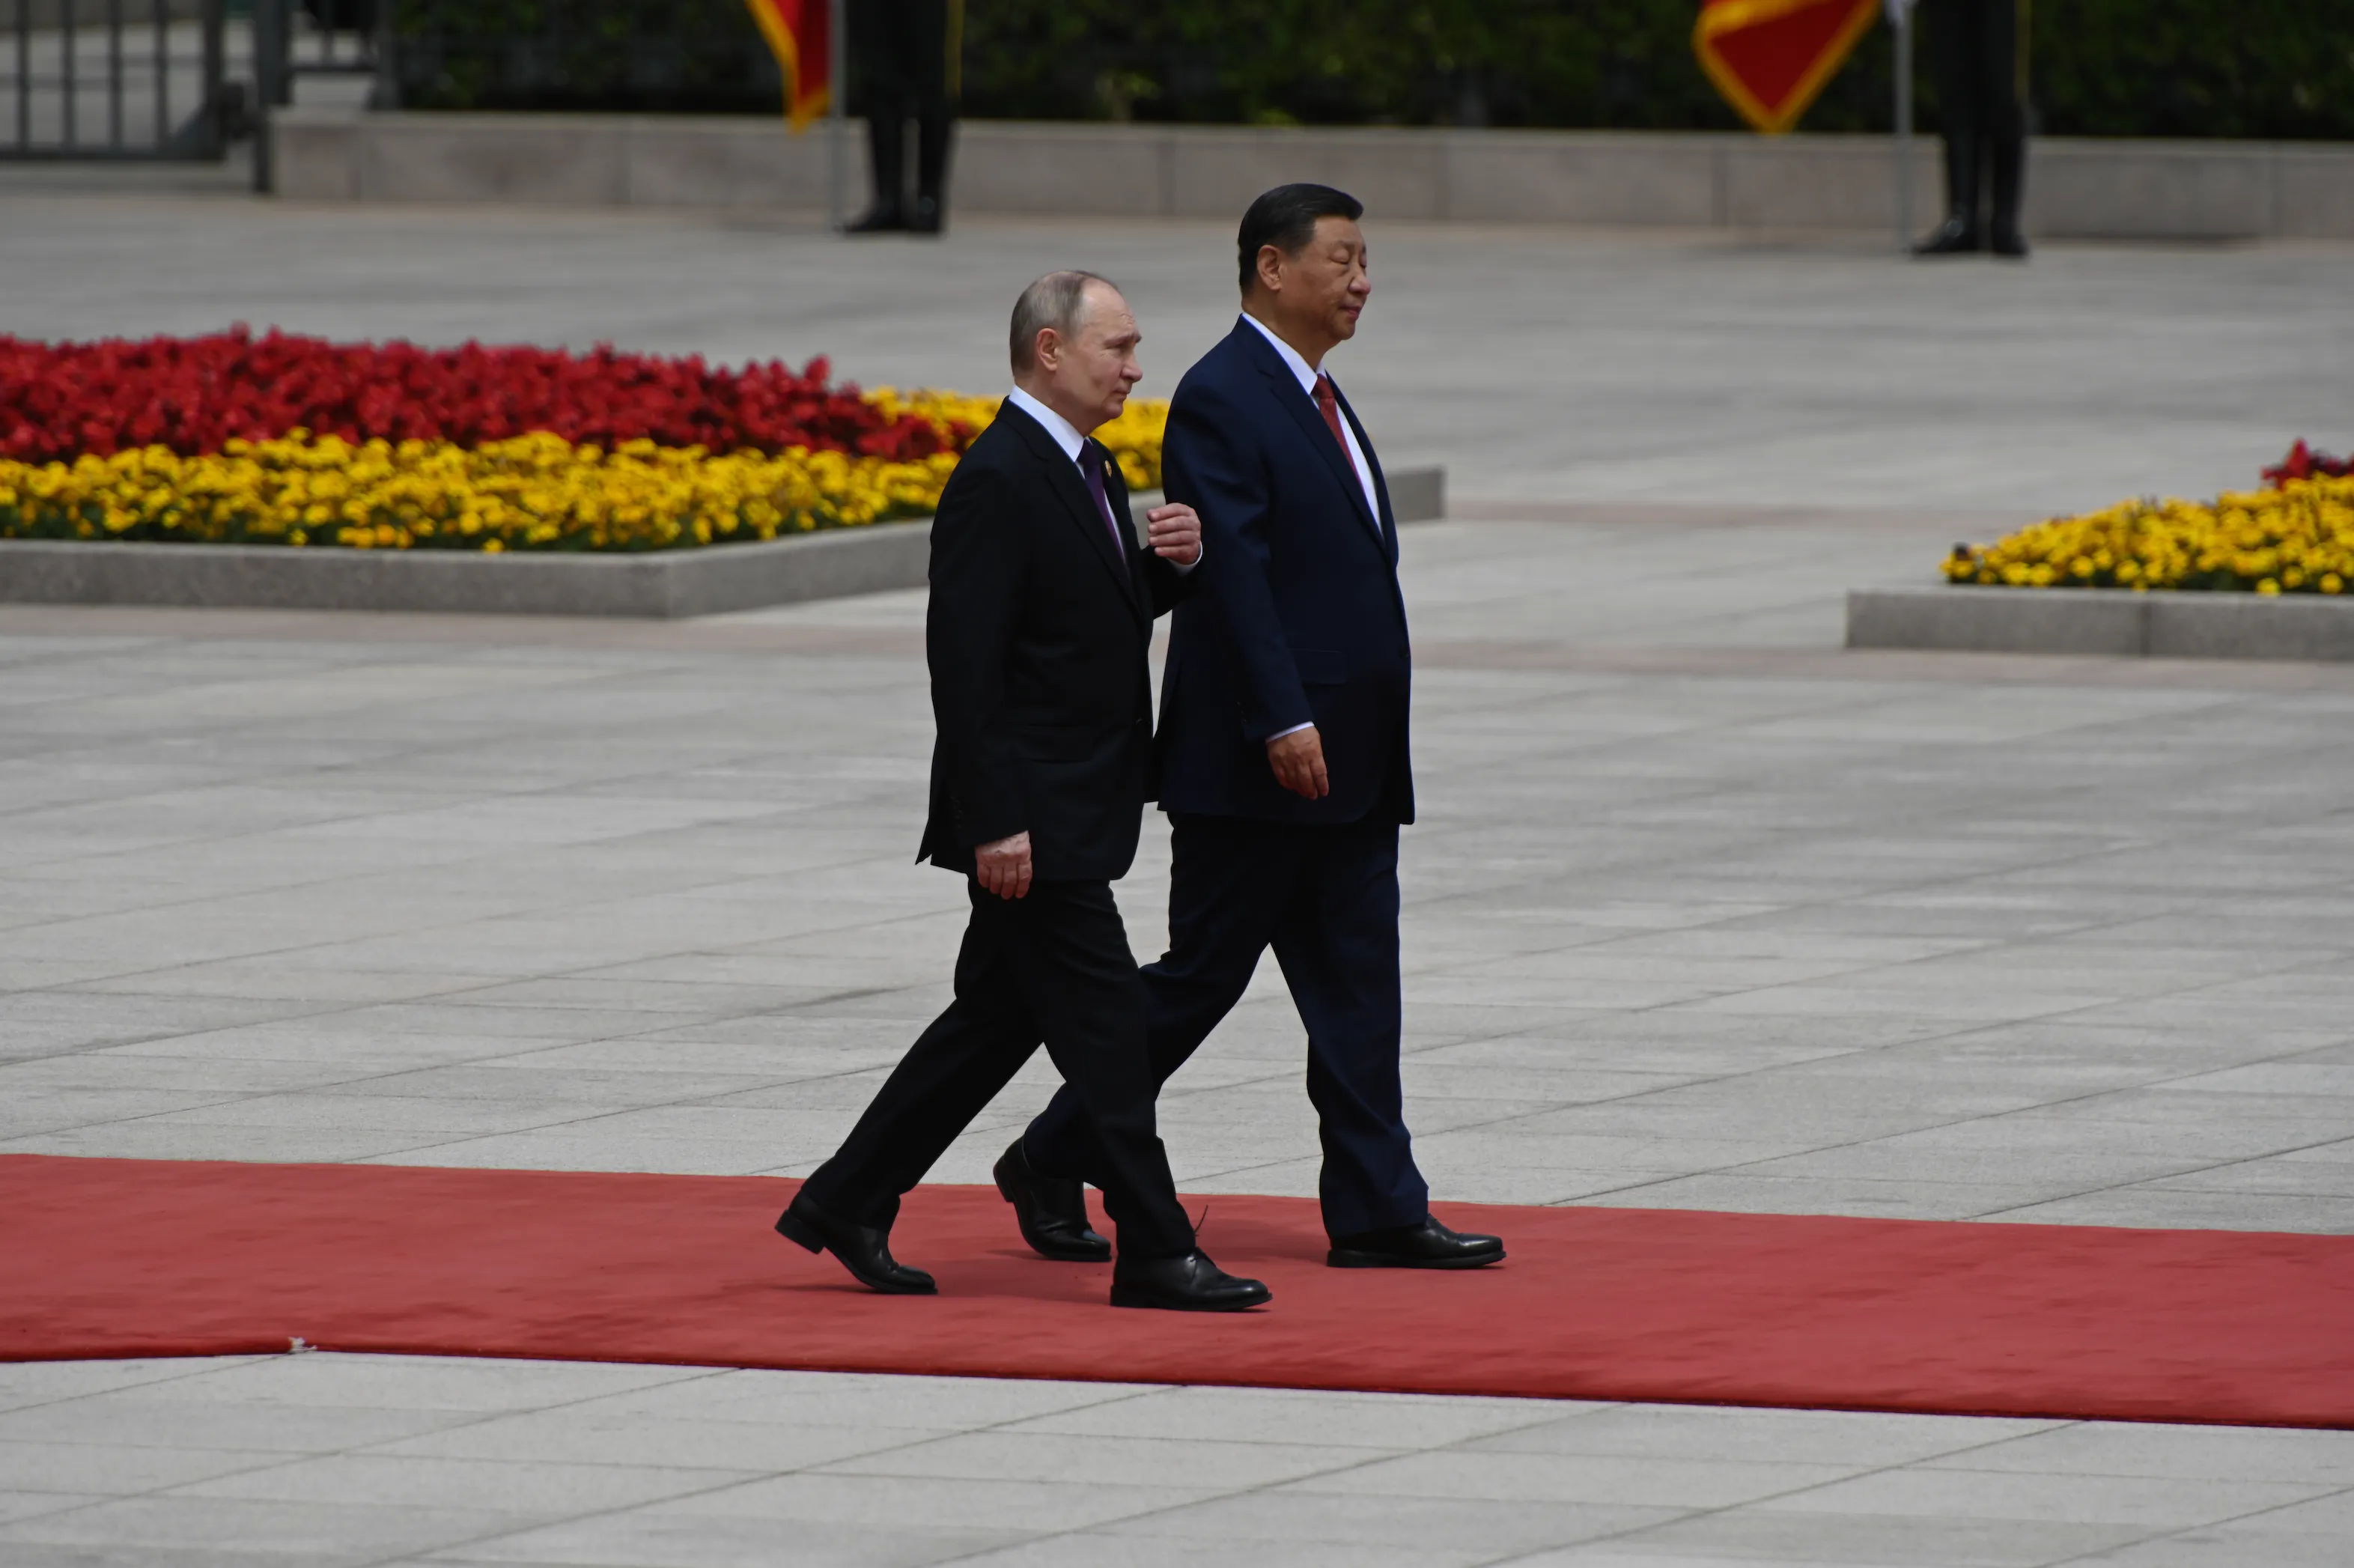 Пушки и "Подмосковные вечера": Появилось видео торжественной церемонии в честь прилёта Путина в Пекине